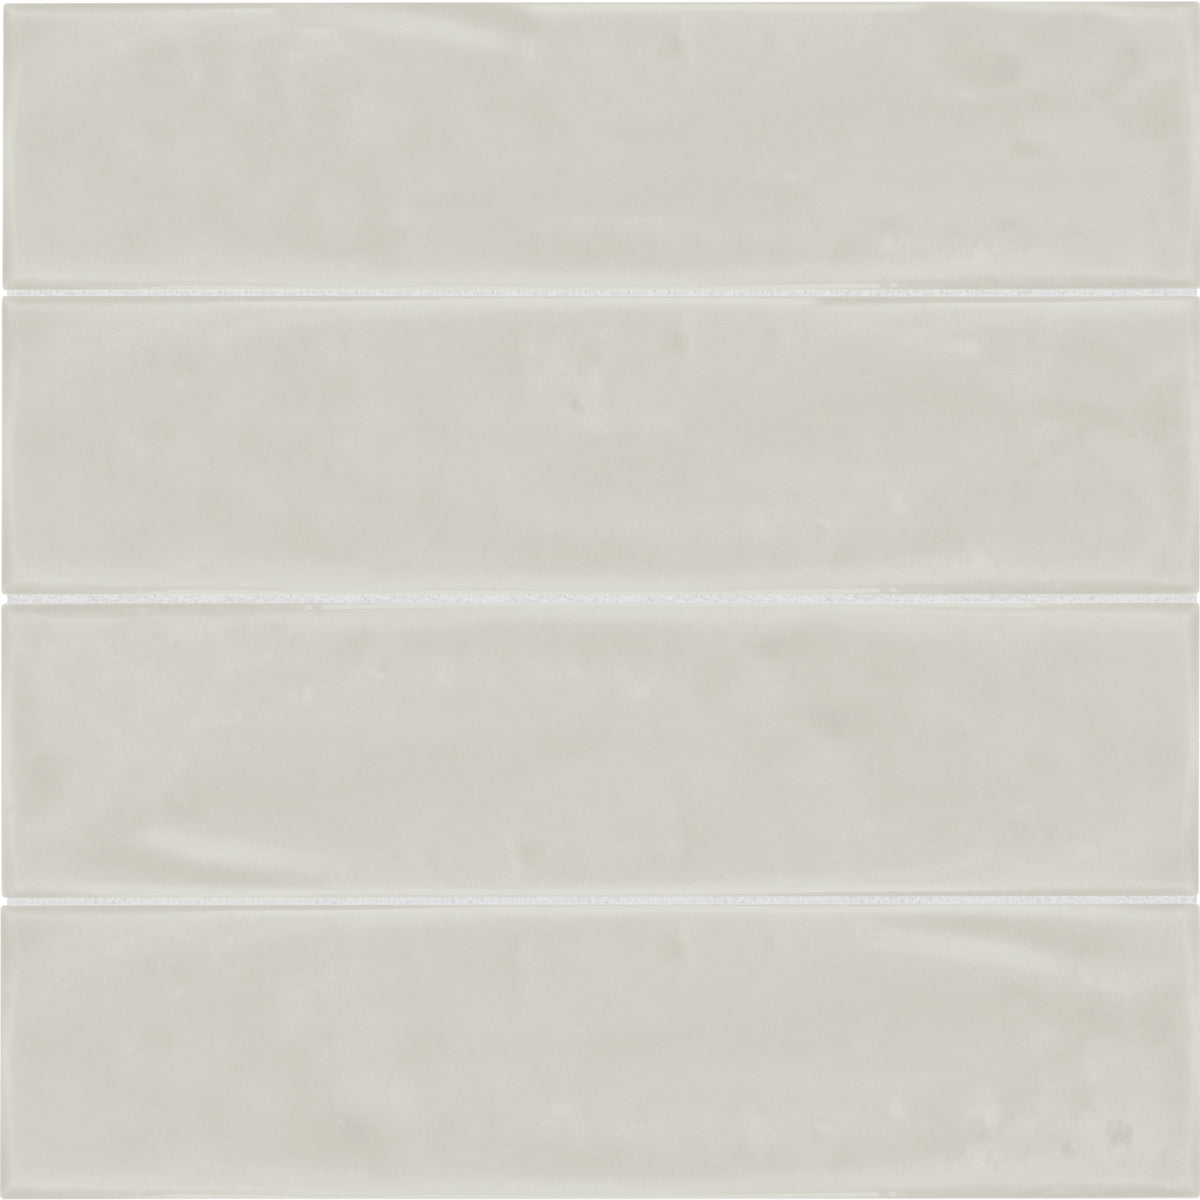 Anatolia - Marlow 3 in. x 12 in. Glazed Ceramic Tile - Desert Glossy